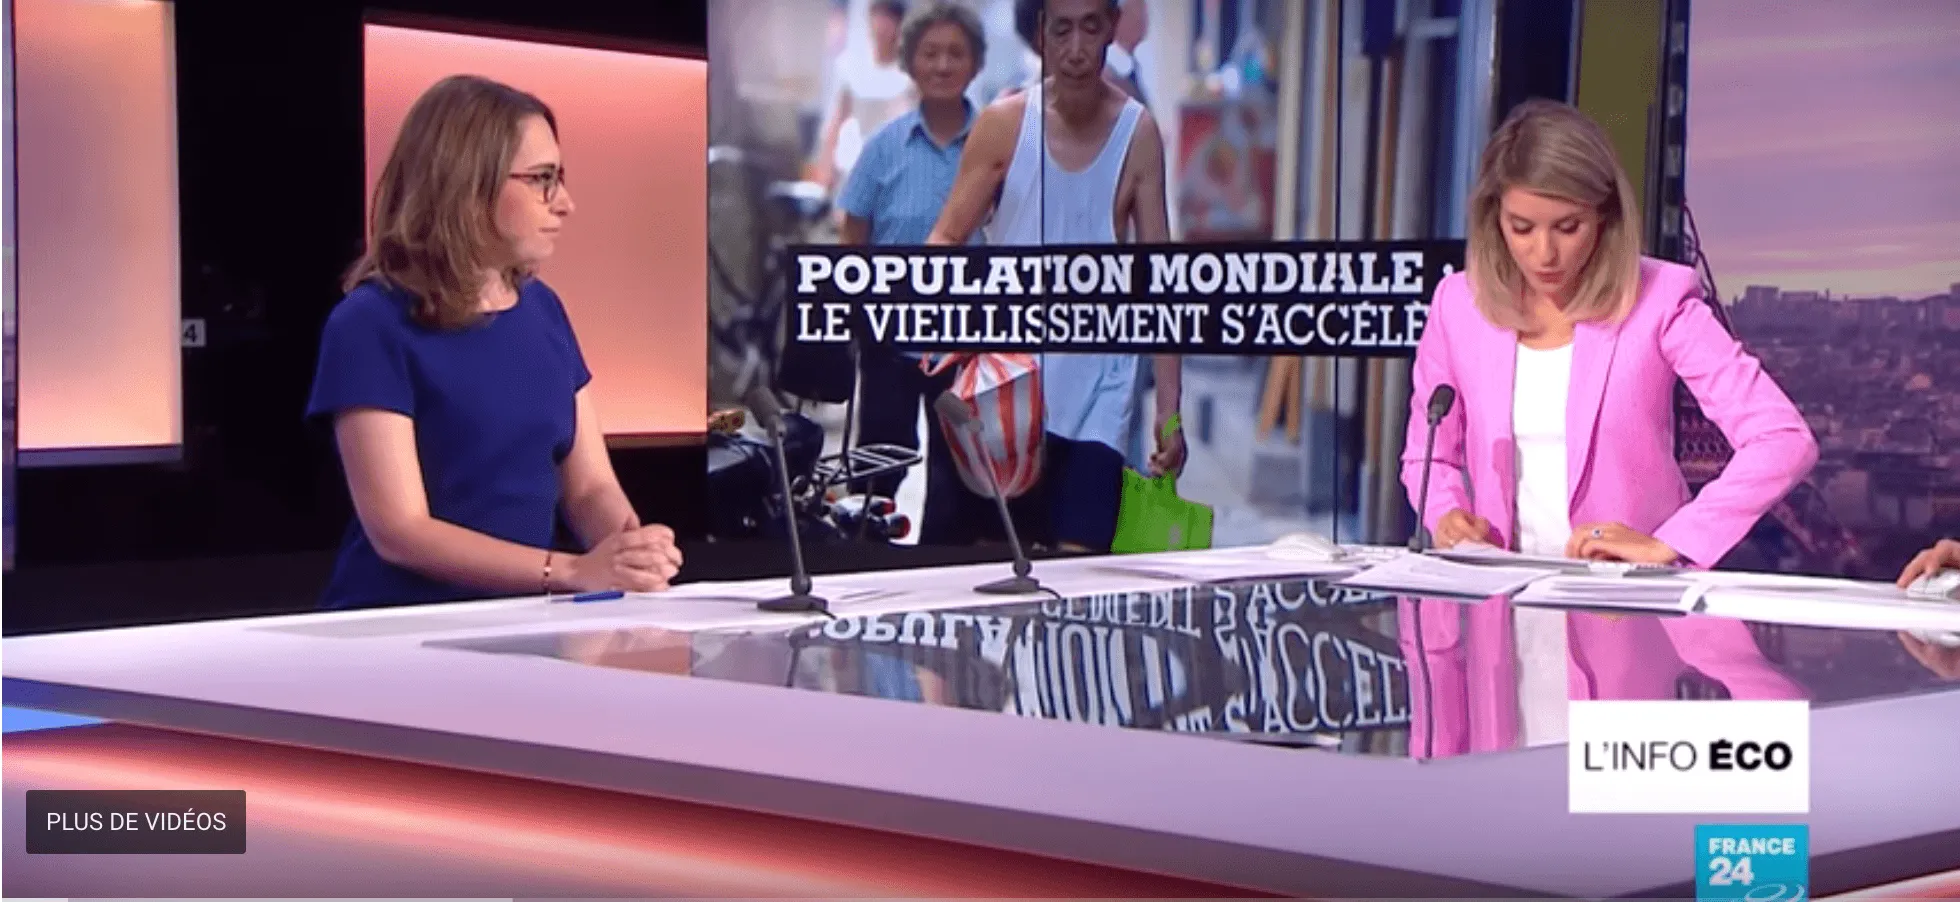 « Population mondiale : le vieillissement s'accélère », émission L'info éco sur France 24, présentée par Line Rifai, chroniqueuse économie, diffusée le 18 septembre 2018.